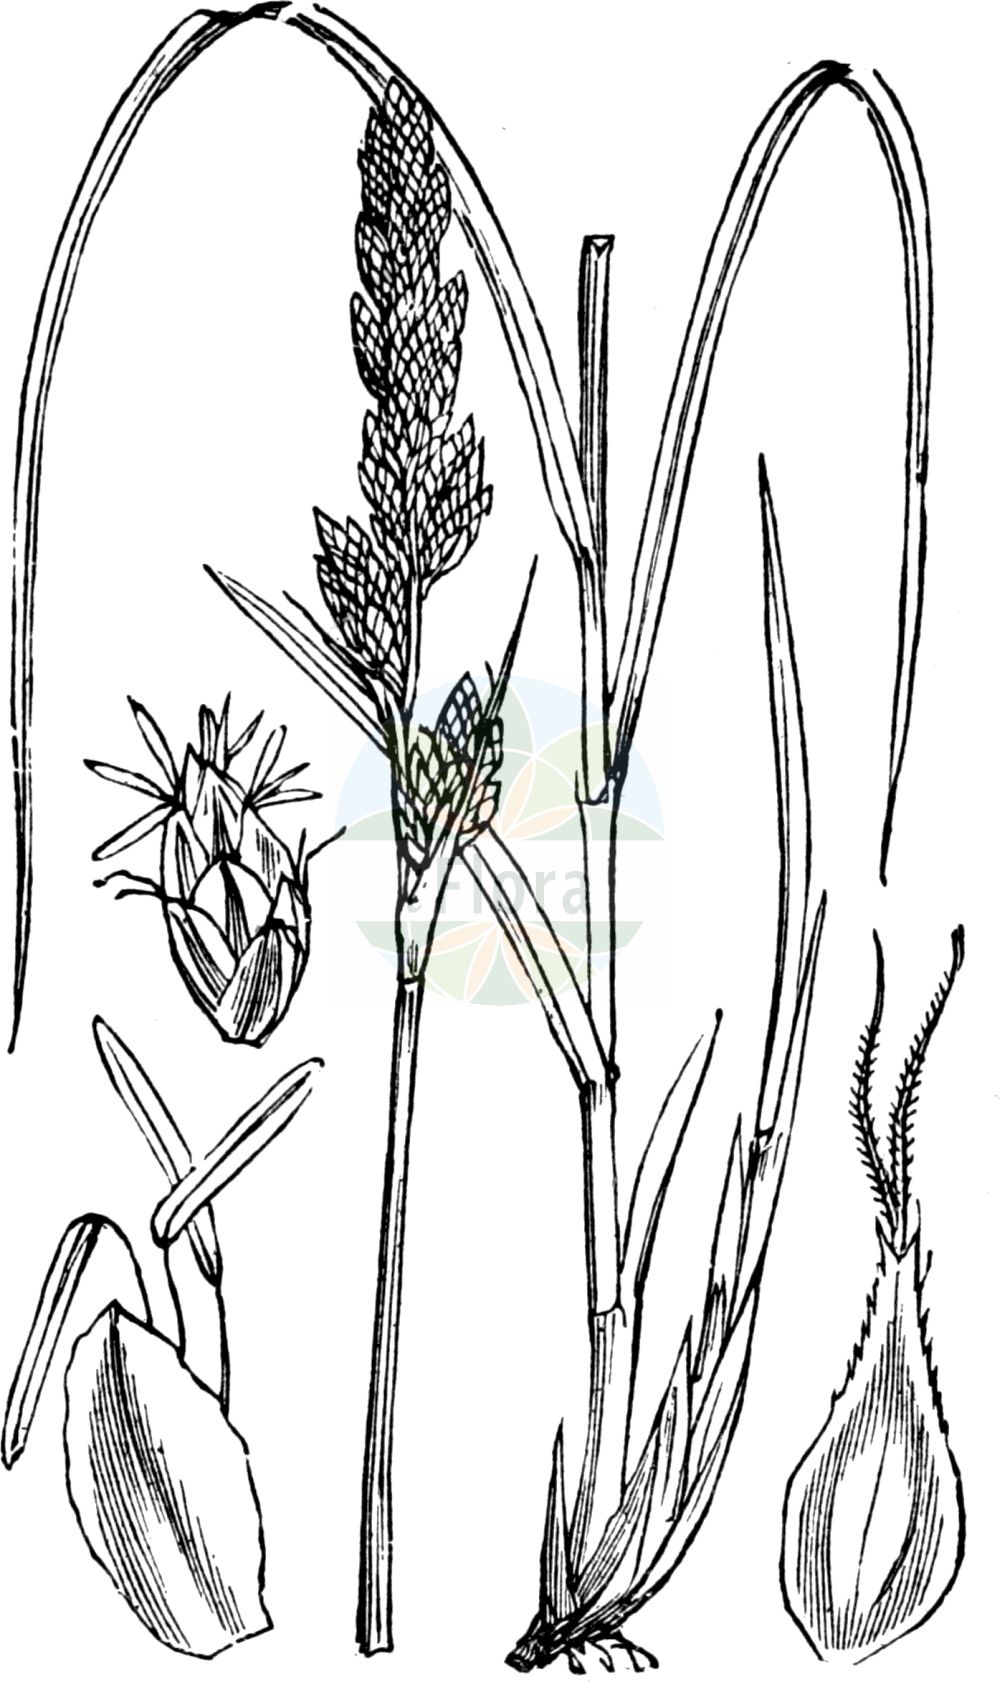 Historische Abbildung von Carex paniculata (Rispen-Segge - Greater Tussock-Sedge). Das Bild zeigt Blatt, Bluete, Frucht und Same. ---- Historical Drawing of Carex paniculata (Rispen-Segge - Greater Tussock-Sedge). The image is showing leaf, flower, fruit and seed.(Carex paniculata,Rispen-Segge,Greater Tussock-Sedge,Carex paniculata,Vignea paniculata,Rispen-Segge,Greater Tussock-Sedge,Panicled Sedge,Tussock Sedge,Carex,Segge,Sedge,Cyperaceae,Sauergräser,Sedge family,Blatt,Bluete,Frucht,Same,leaf,flower,fruit,seed,Fitch et al. (1880))